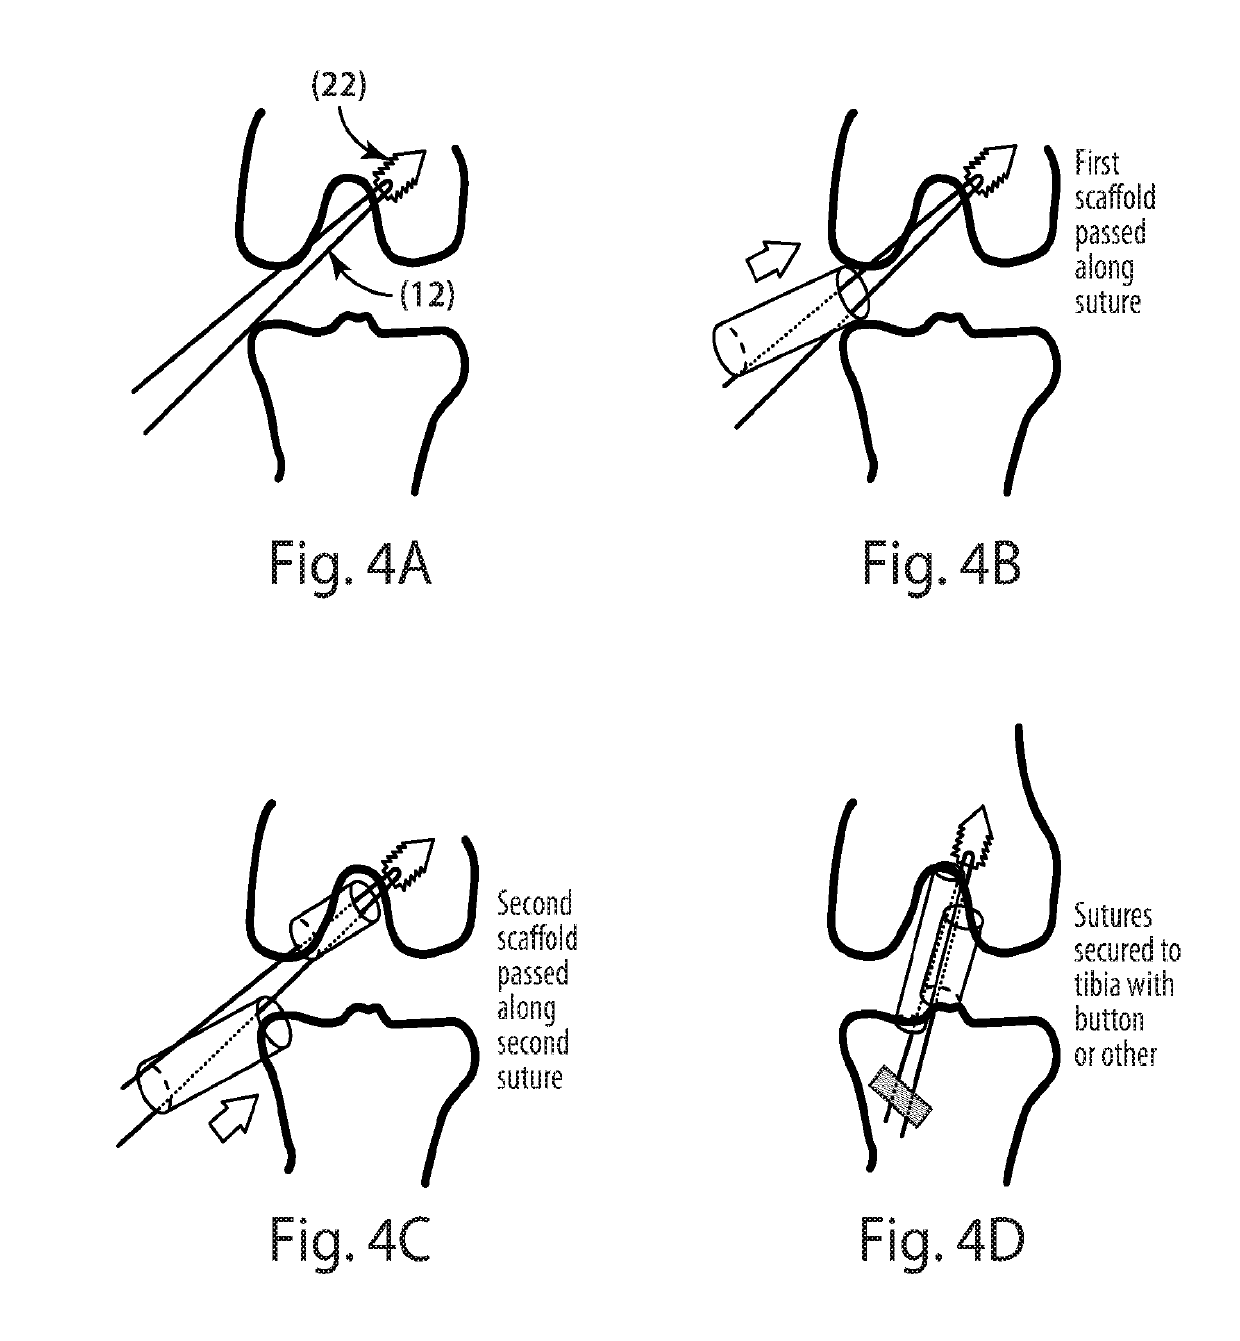 Indirect method of articular tissue repair